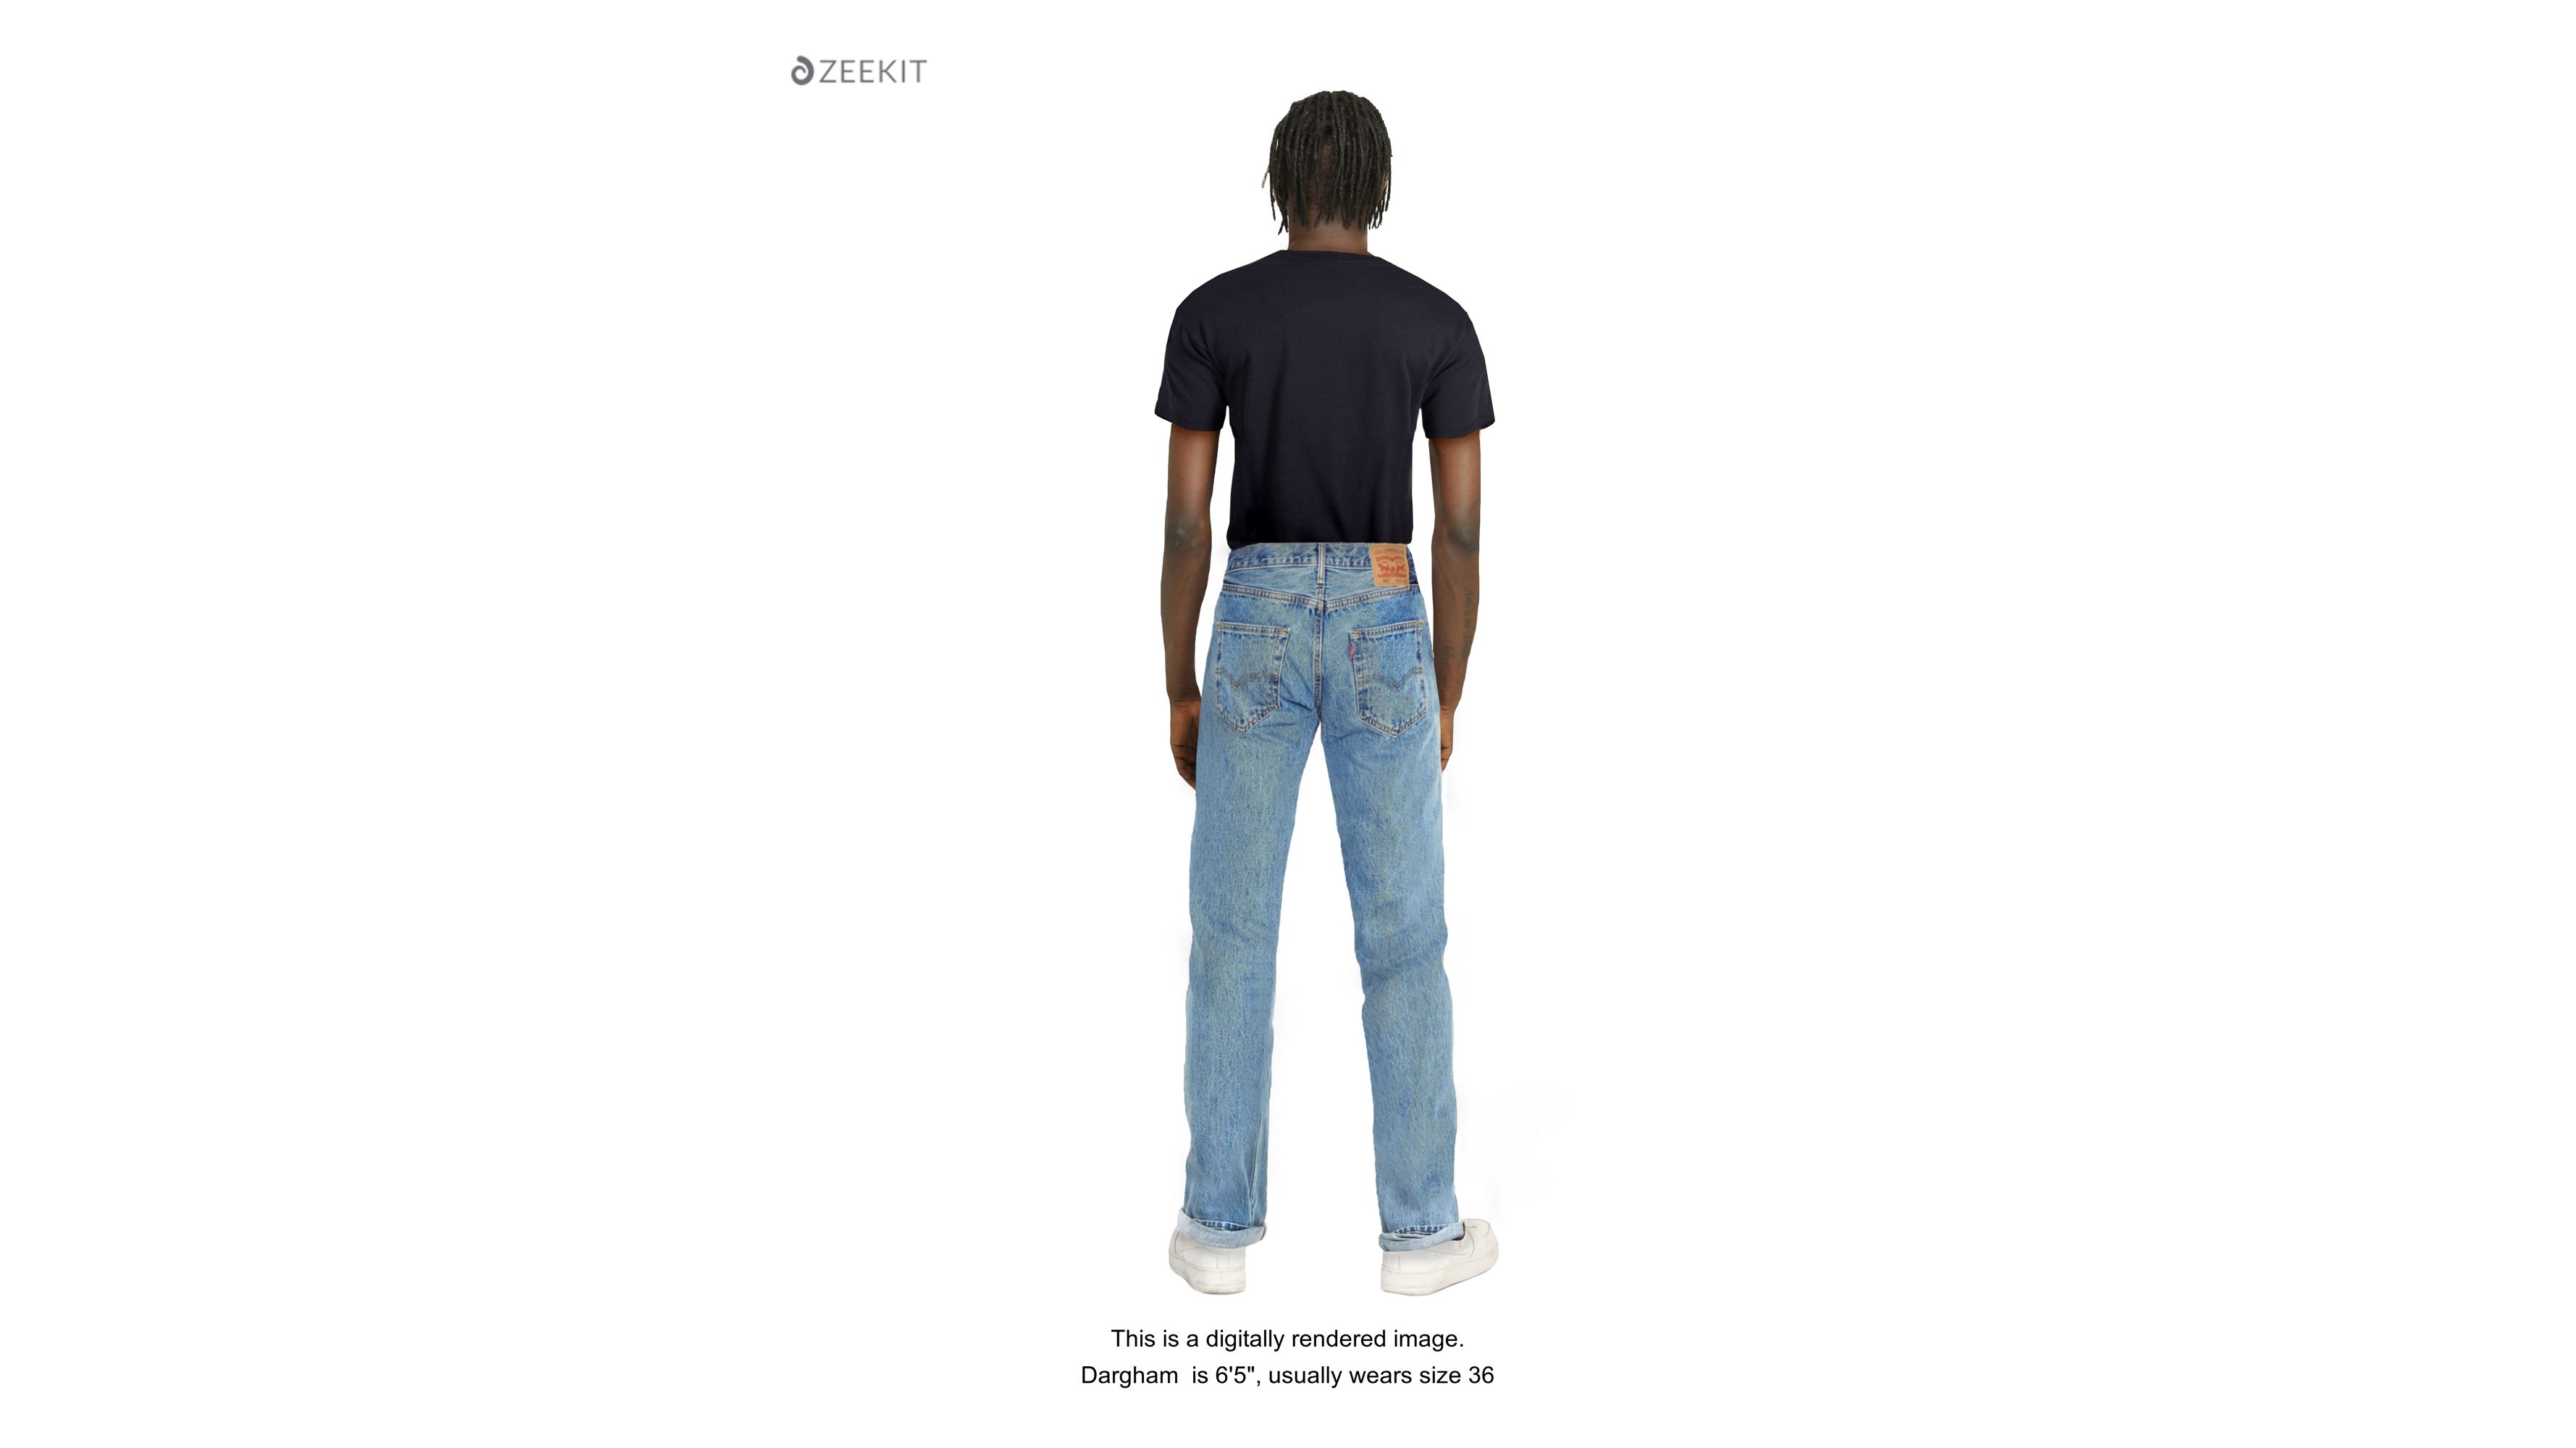 levi's comfort fit jeans